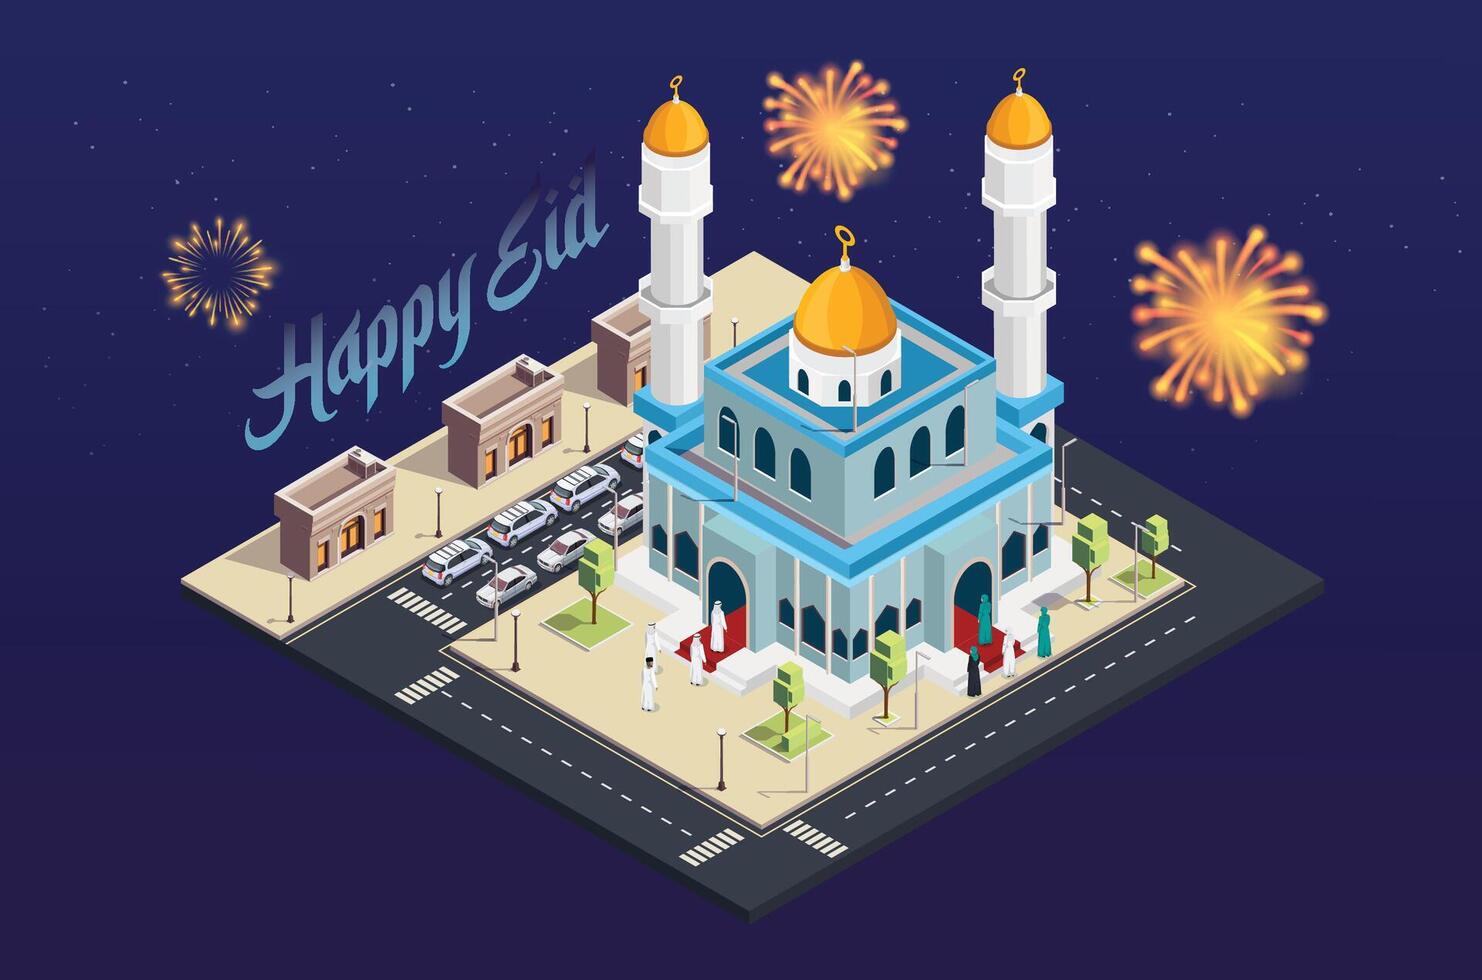 3d isometrisch Vektor Illustration feiern eid al-fitr mit Familie beten zusammen beim das Moschee im das Mitte von das Stadt, geeignet zum Diagramme, Infografiken, Buch Illustration